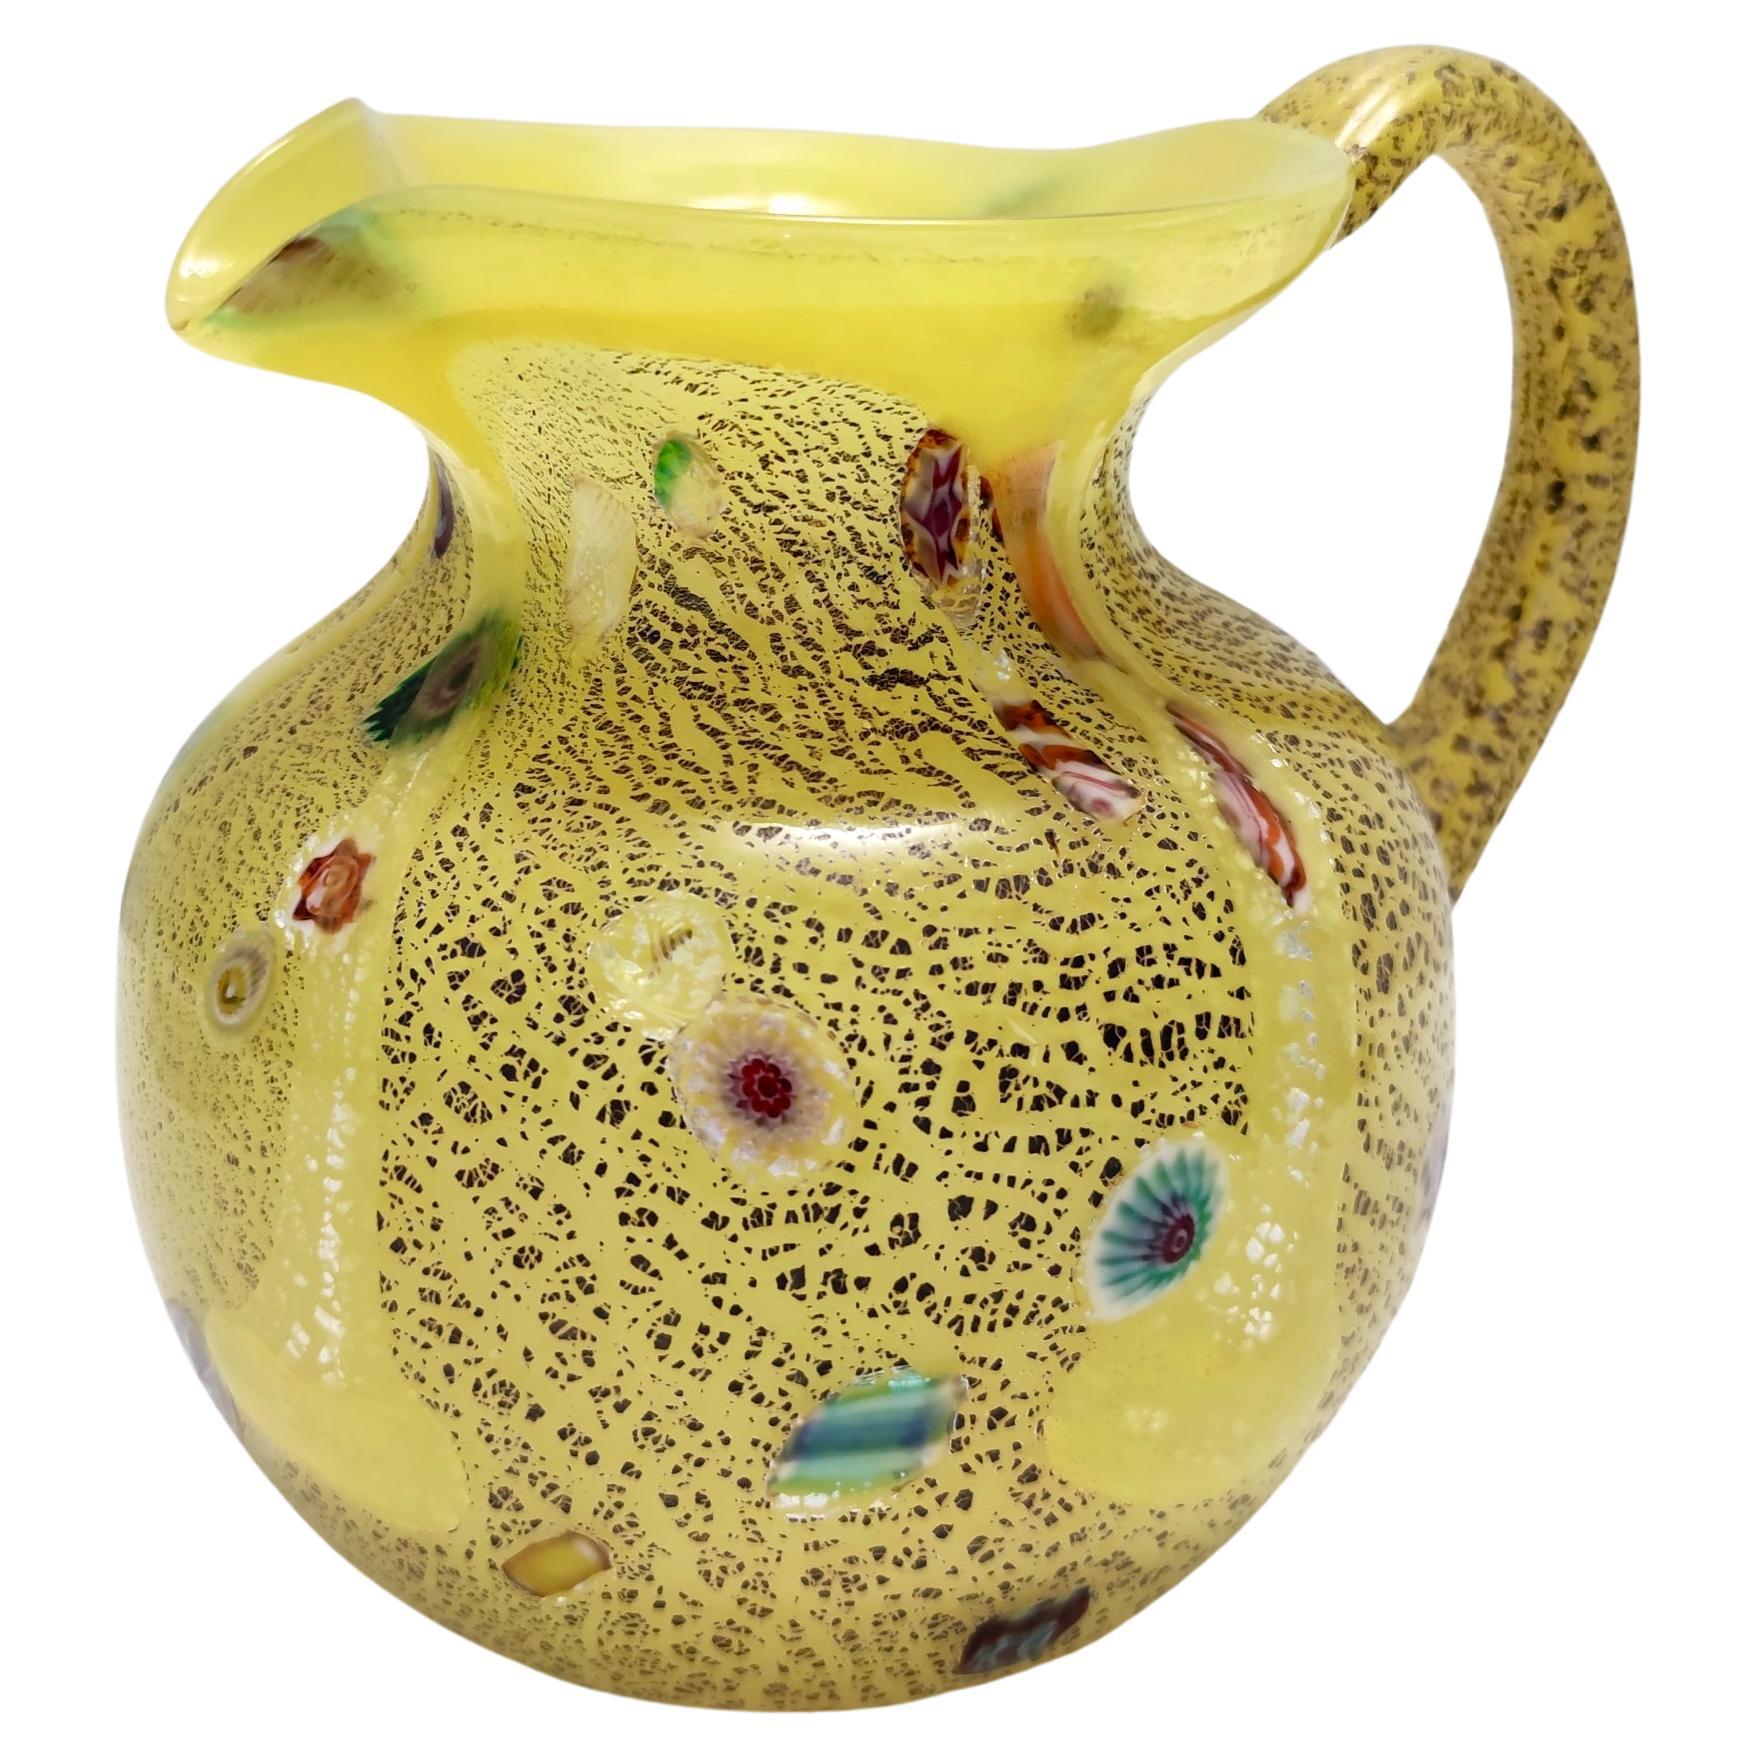 Pichet postmoderne en verre soufflé à la main jaune opalin avec murrines et flûtes d'argent